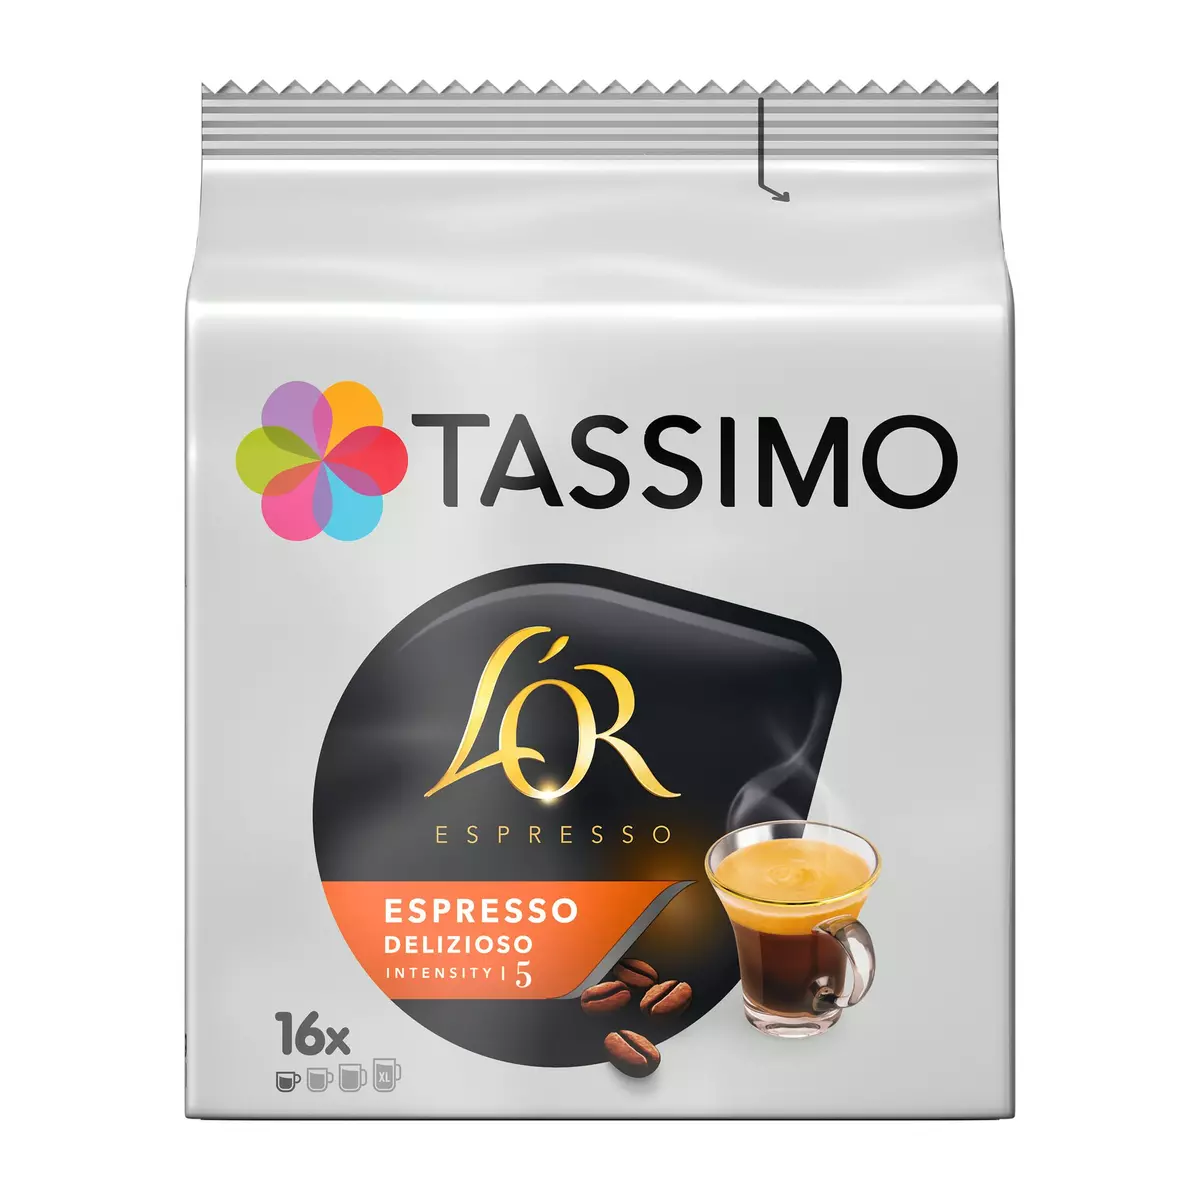 TASSIMO Dosettes de café L'Or Espresso delizioso intensité 5 16 dosettes 104g